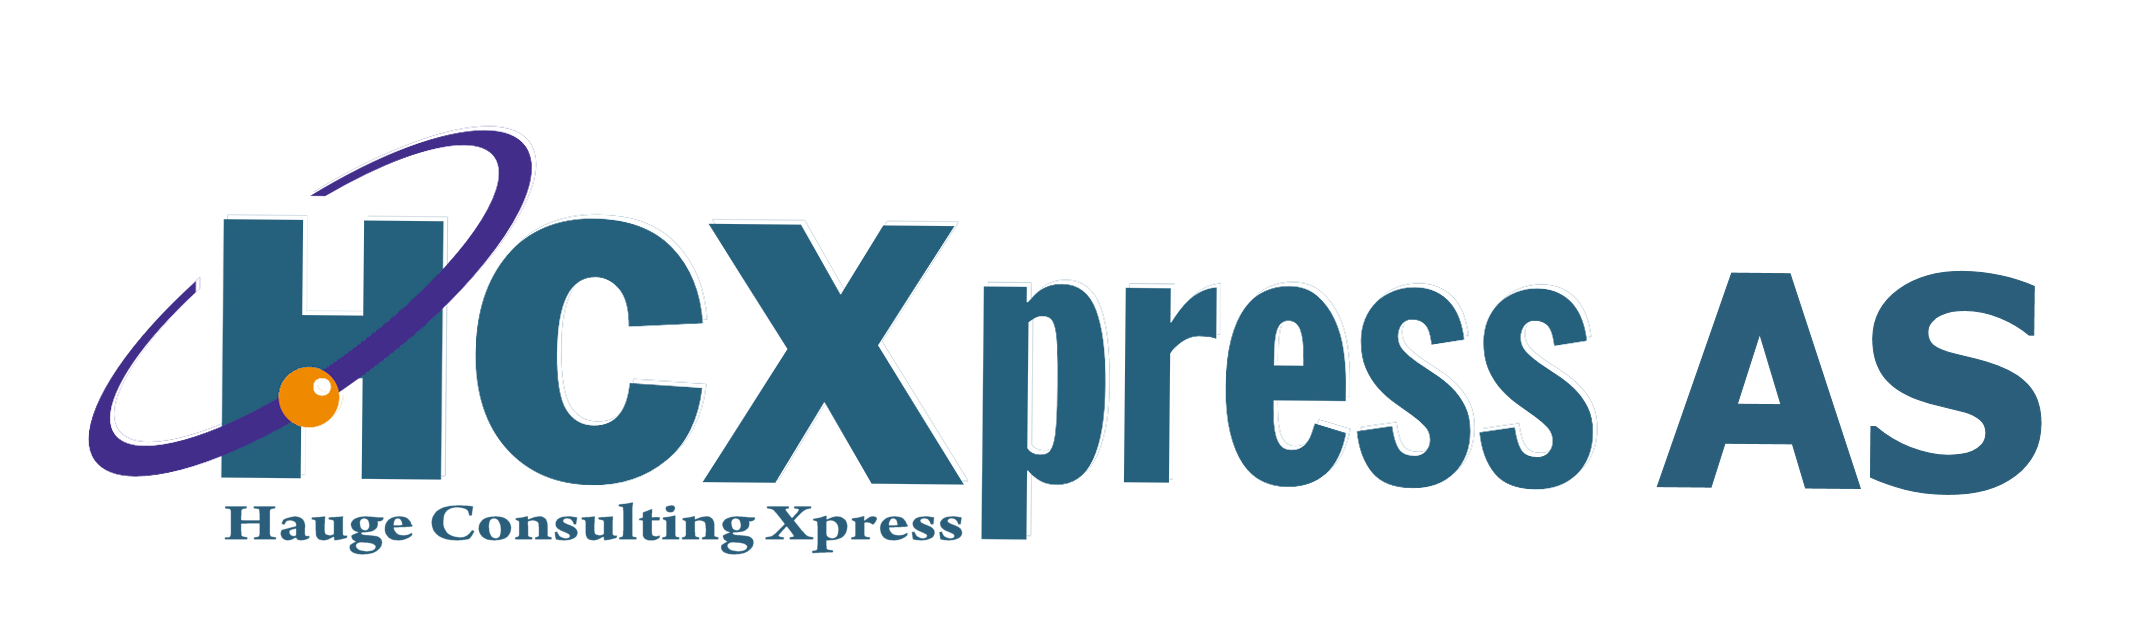 HCXpress AS Logo